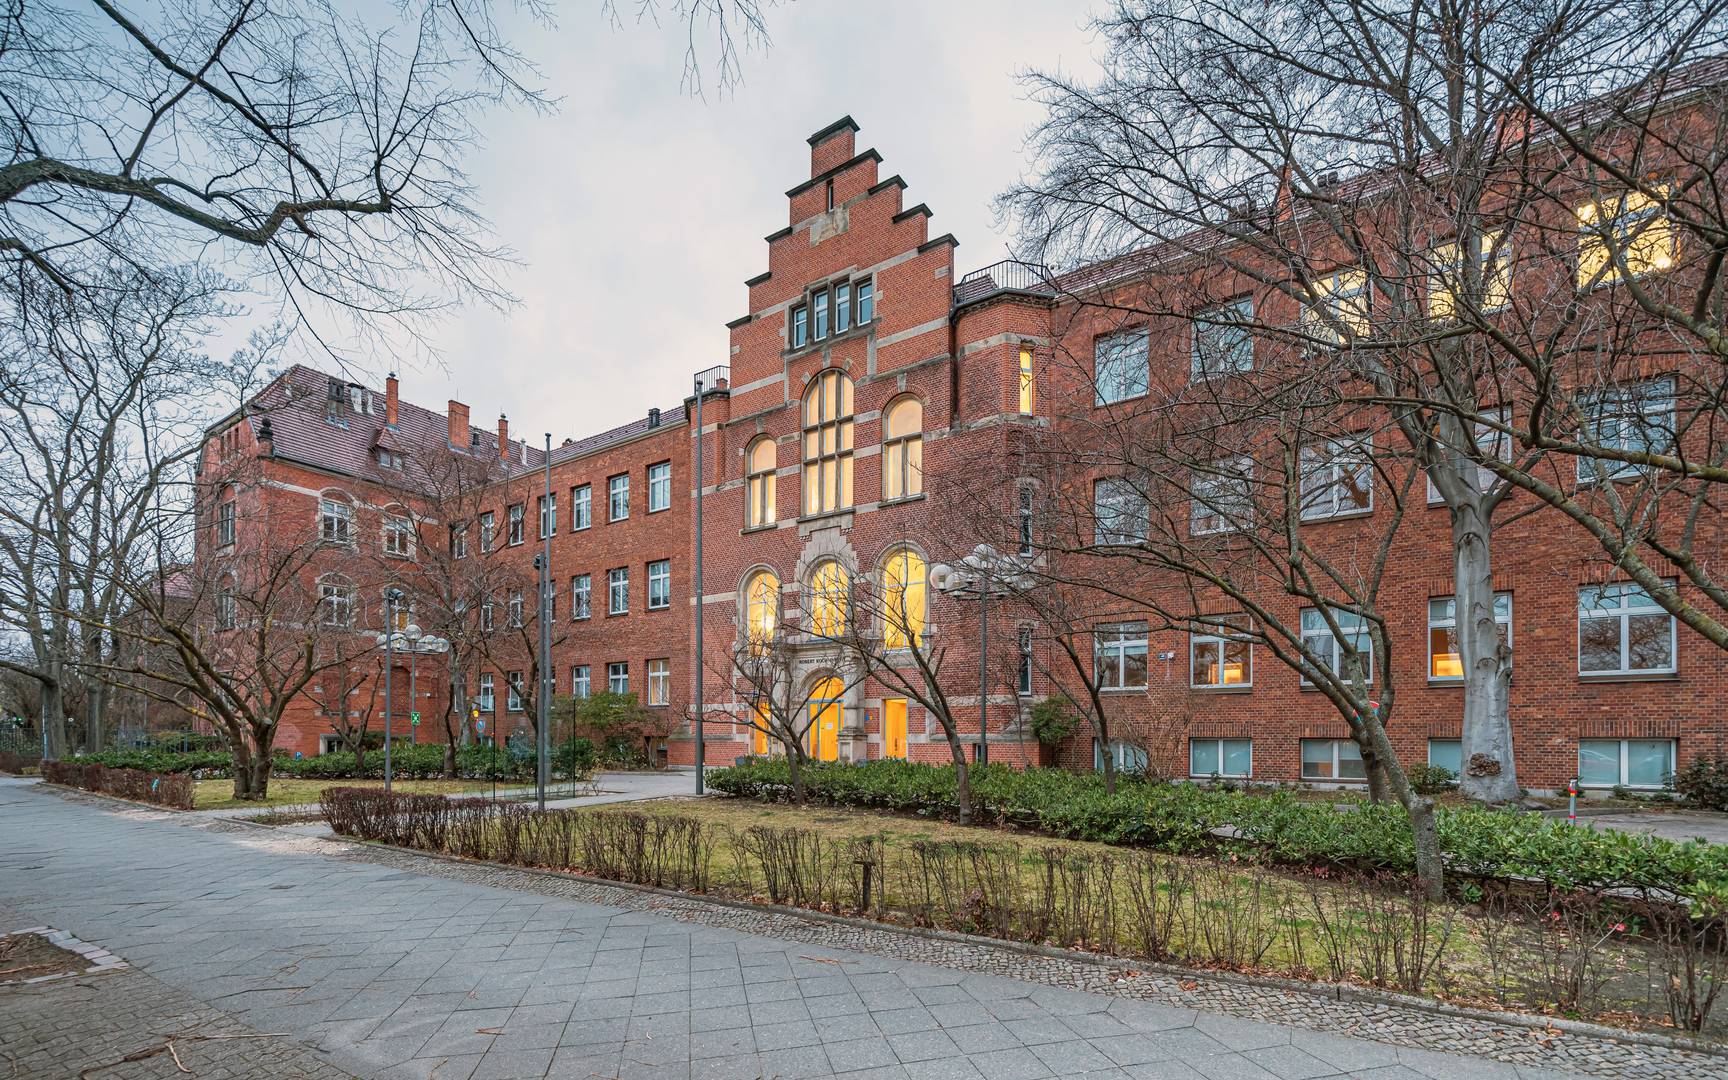 Здание Института им. Роберта Коха в Веддинге, Берлин, Германия. 2021